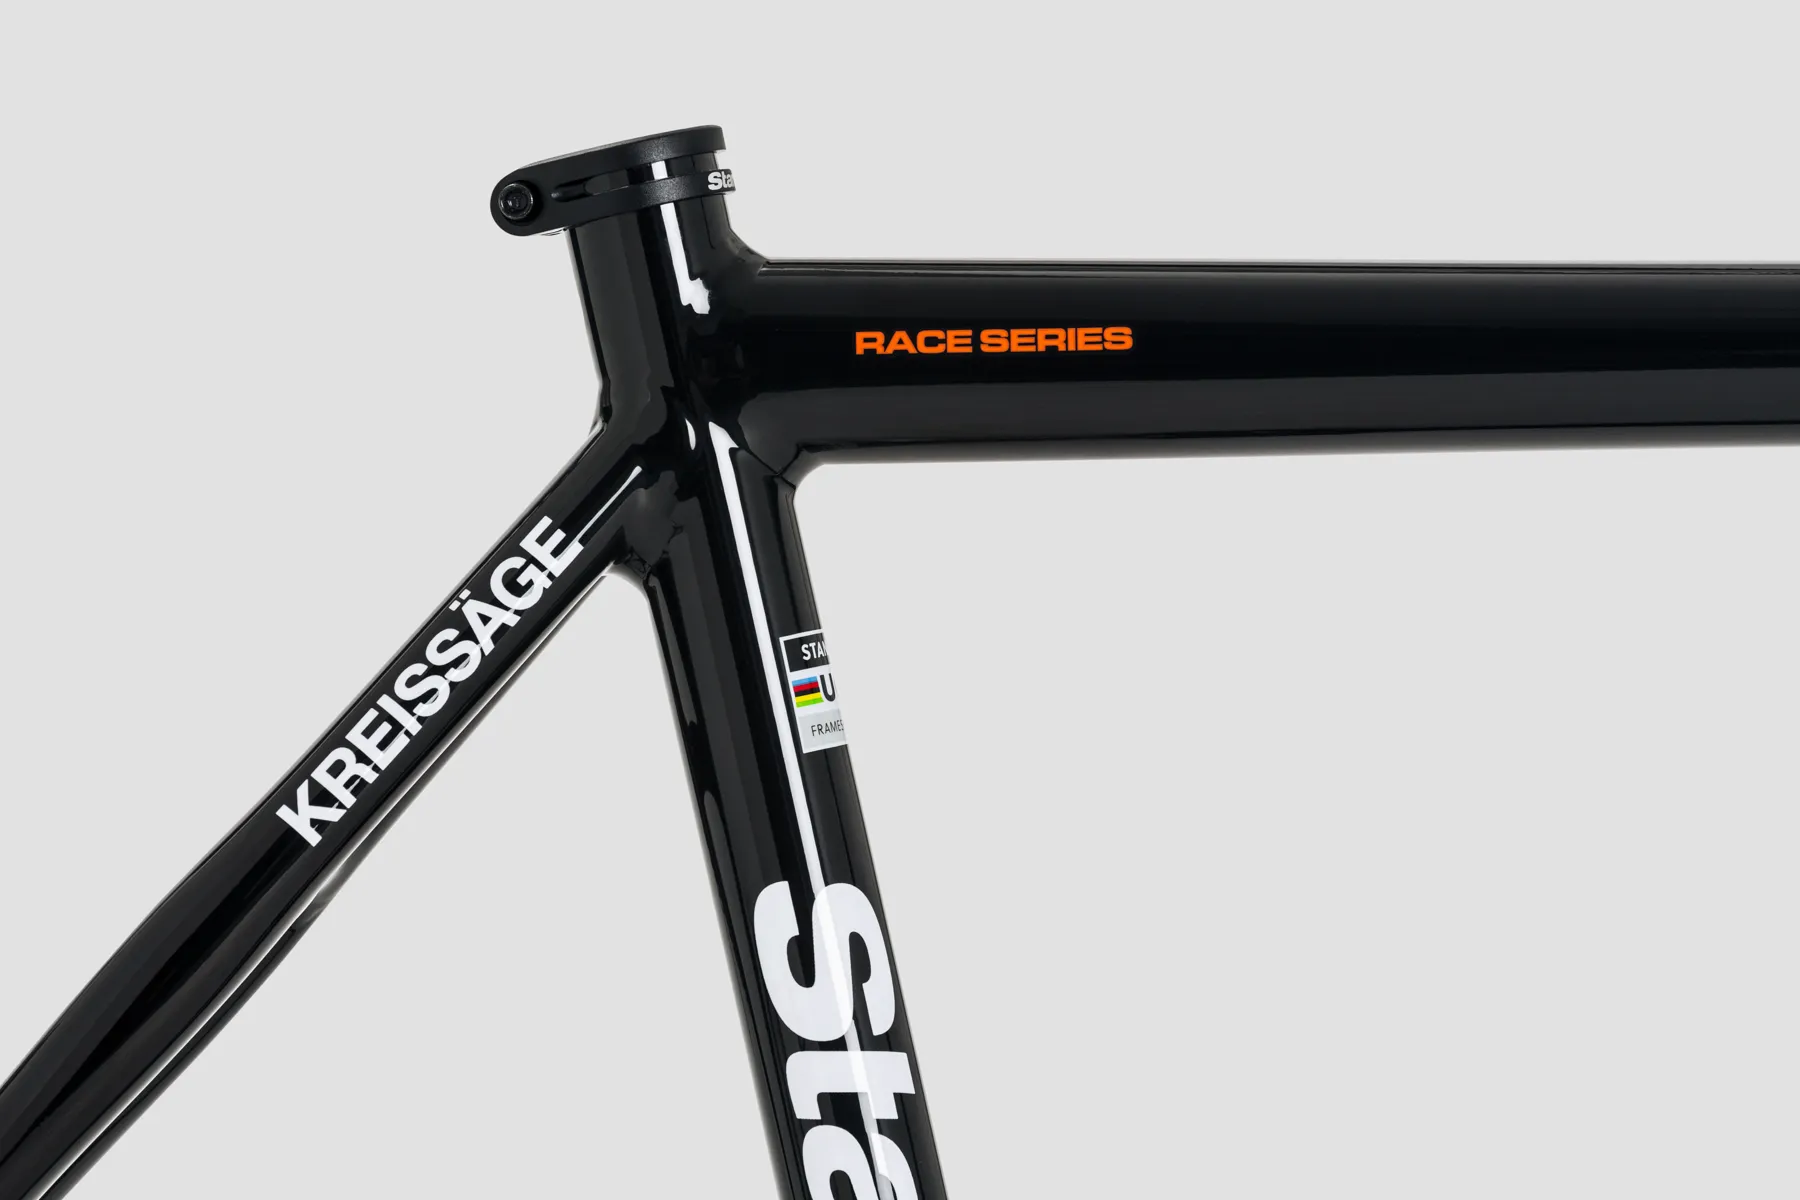 Kreissage RS Black Road Bike Frameset Made for Racing